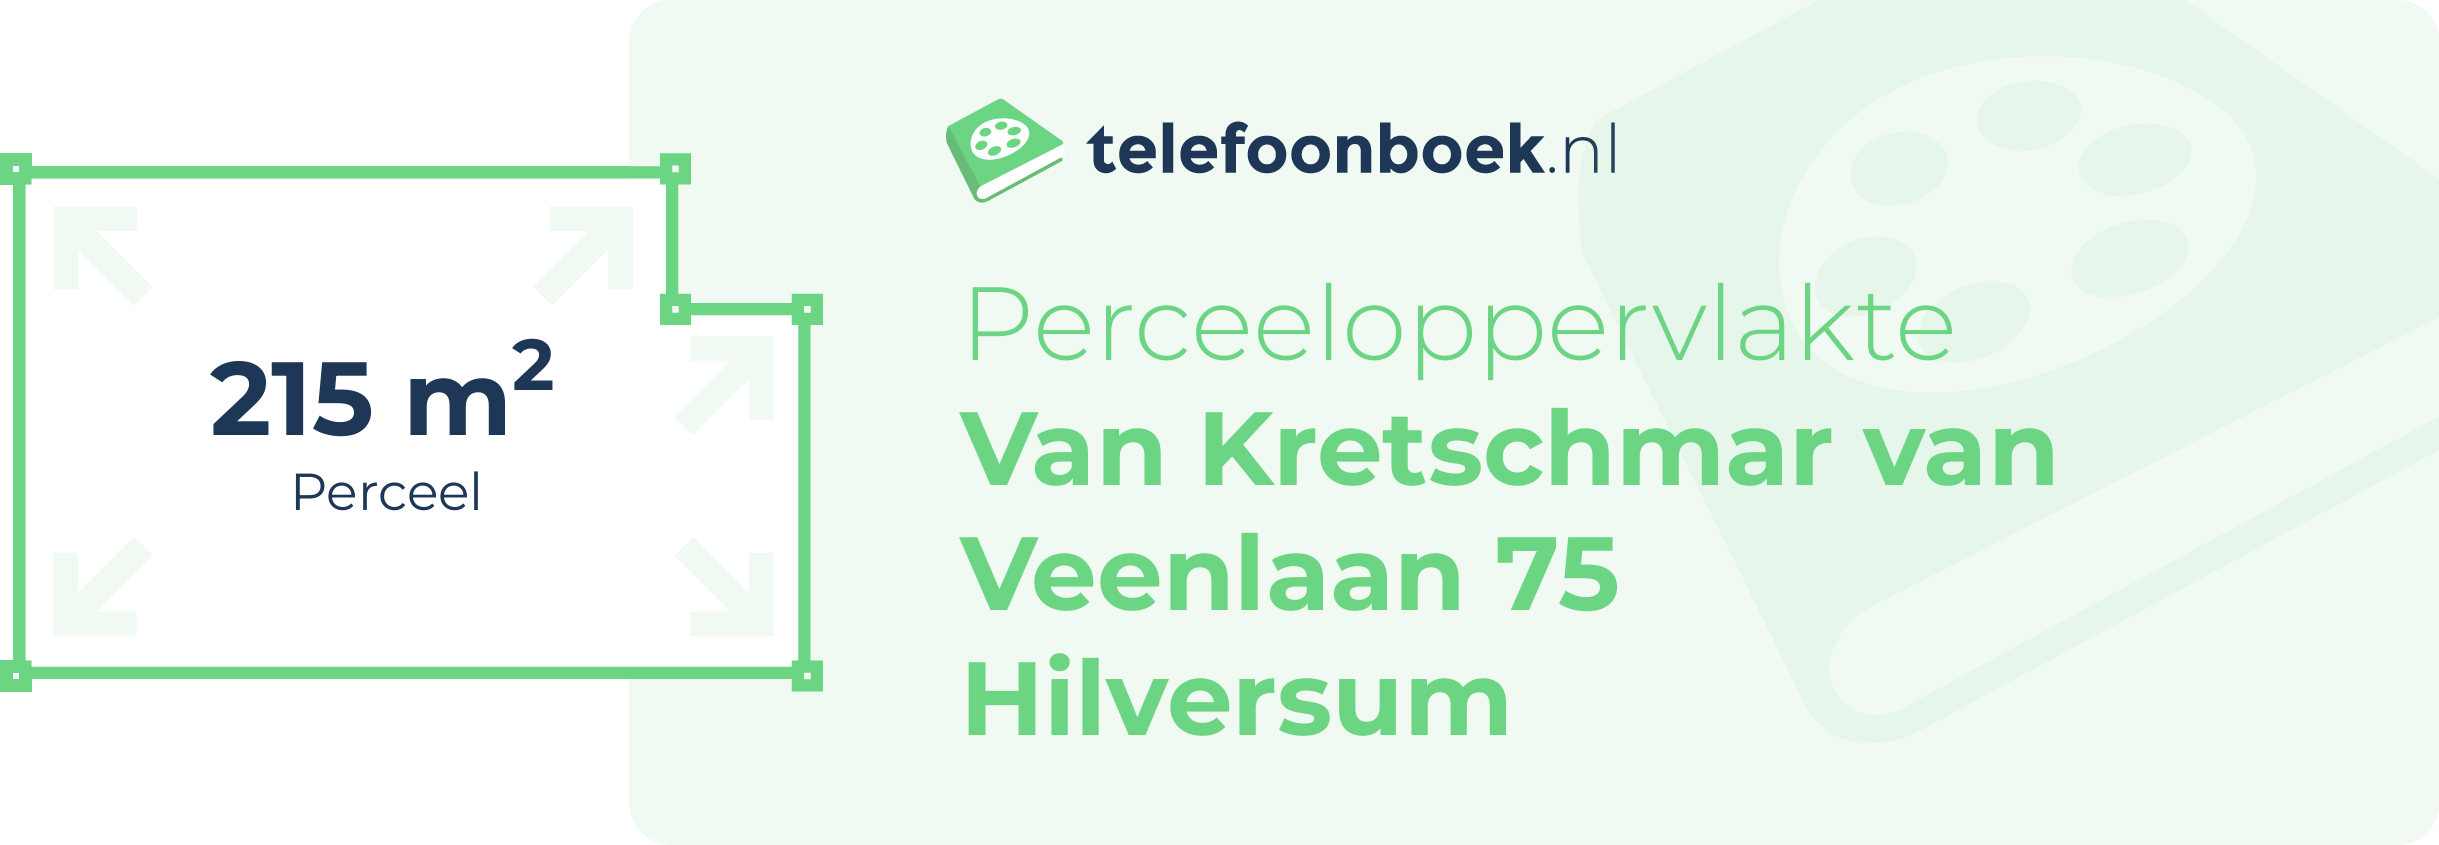 Perceeloppervlakte Van Kretschmar Van Veenlaan 75 Hilversum